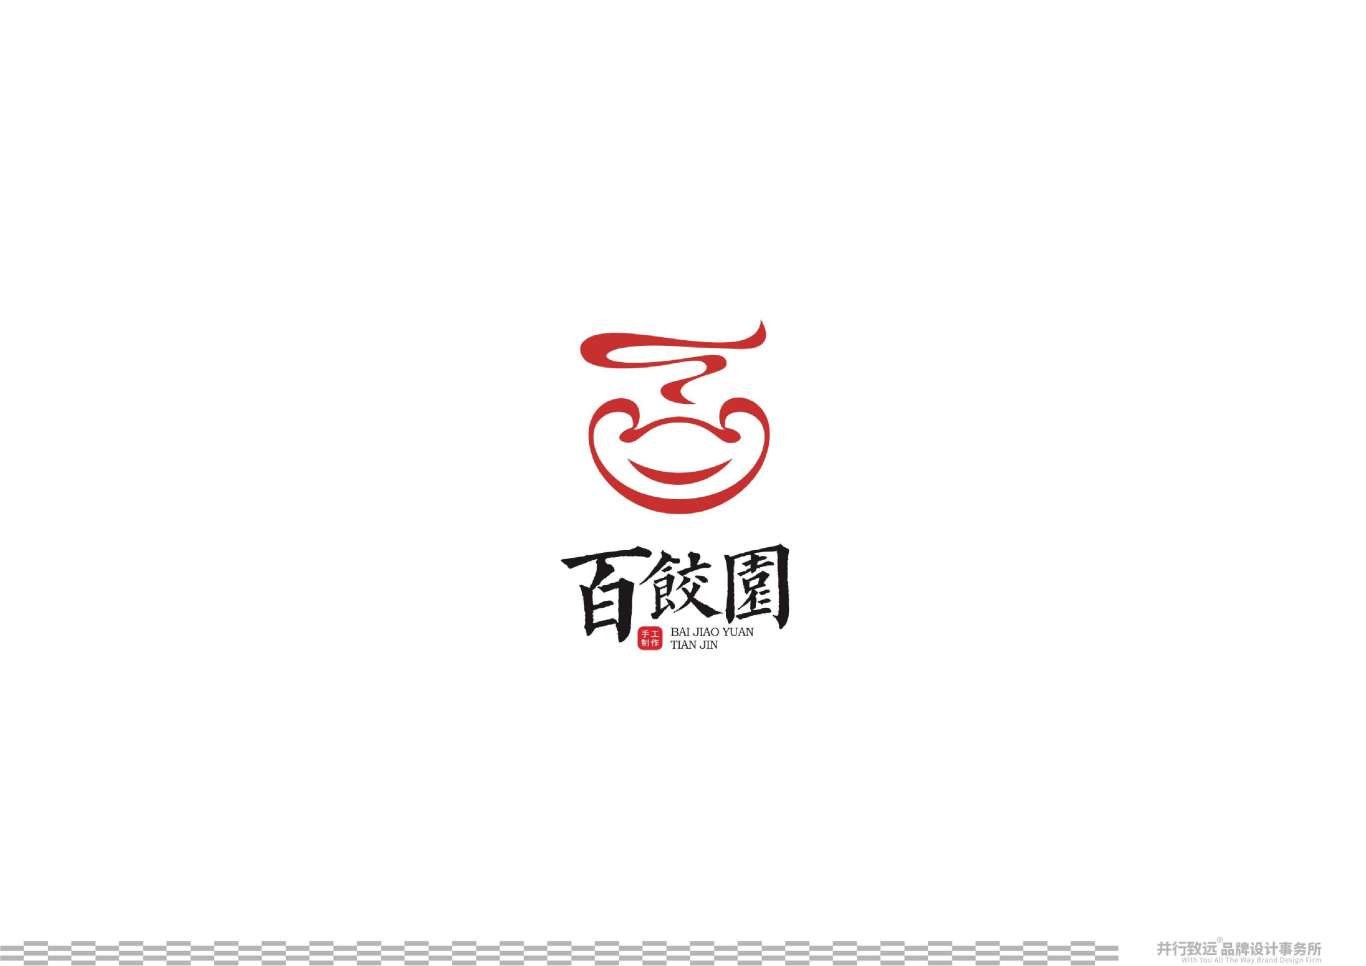 天津百餃園logo升級設計圖25